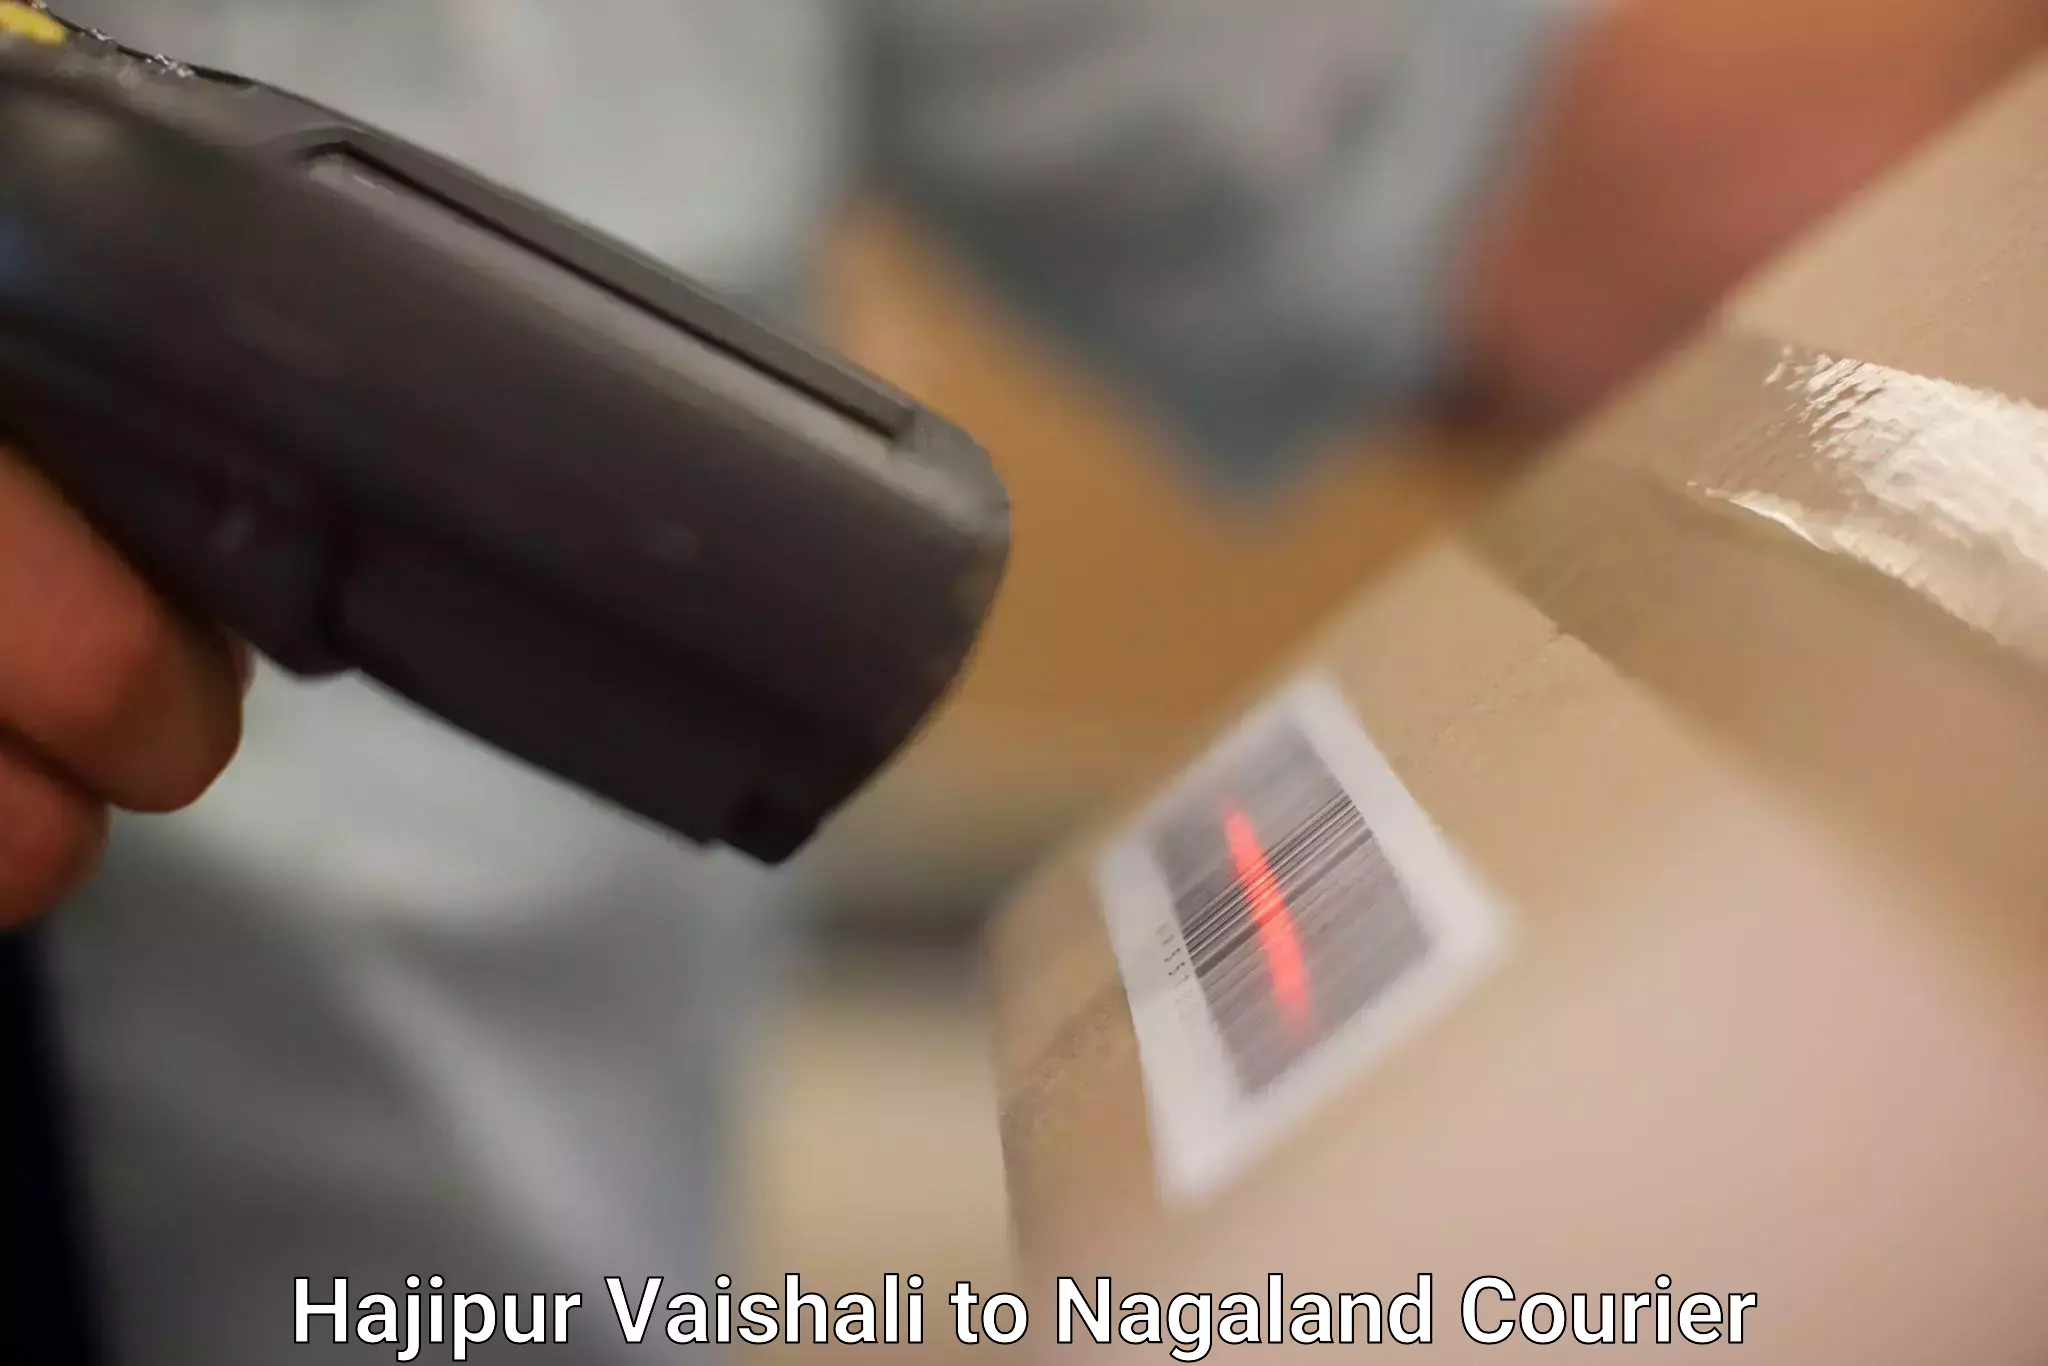 Efficient shipping operations Hajipur Vaishali to Nagaland